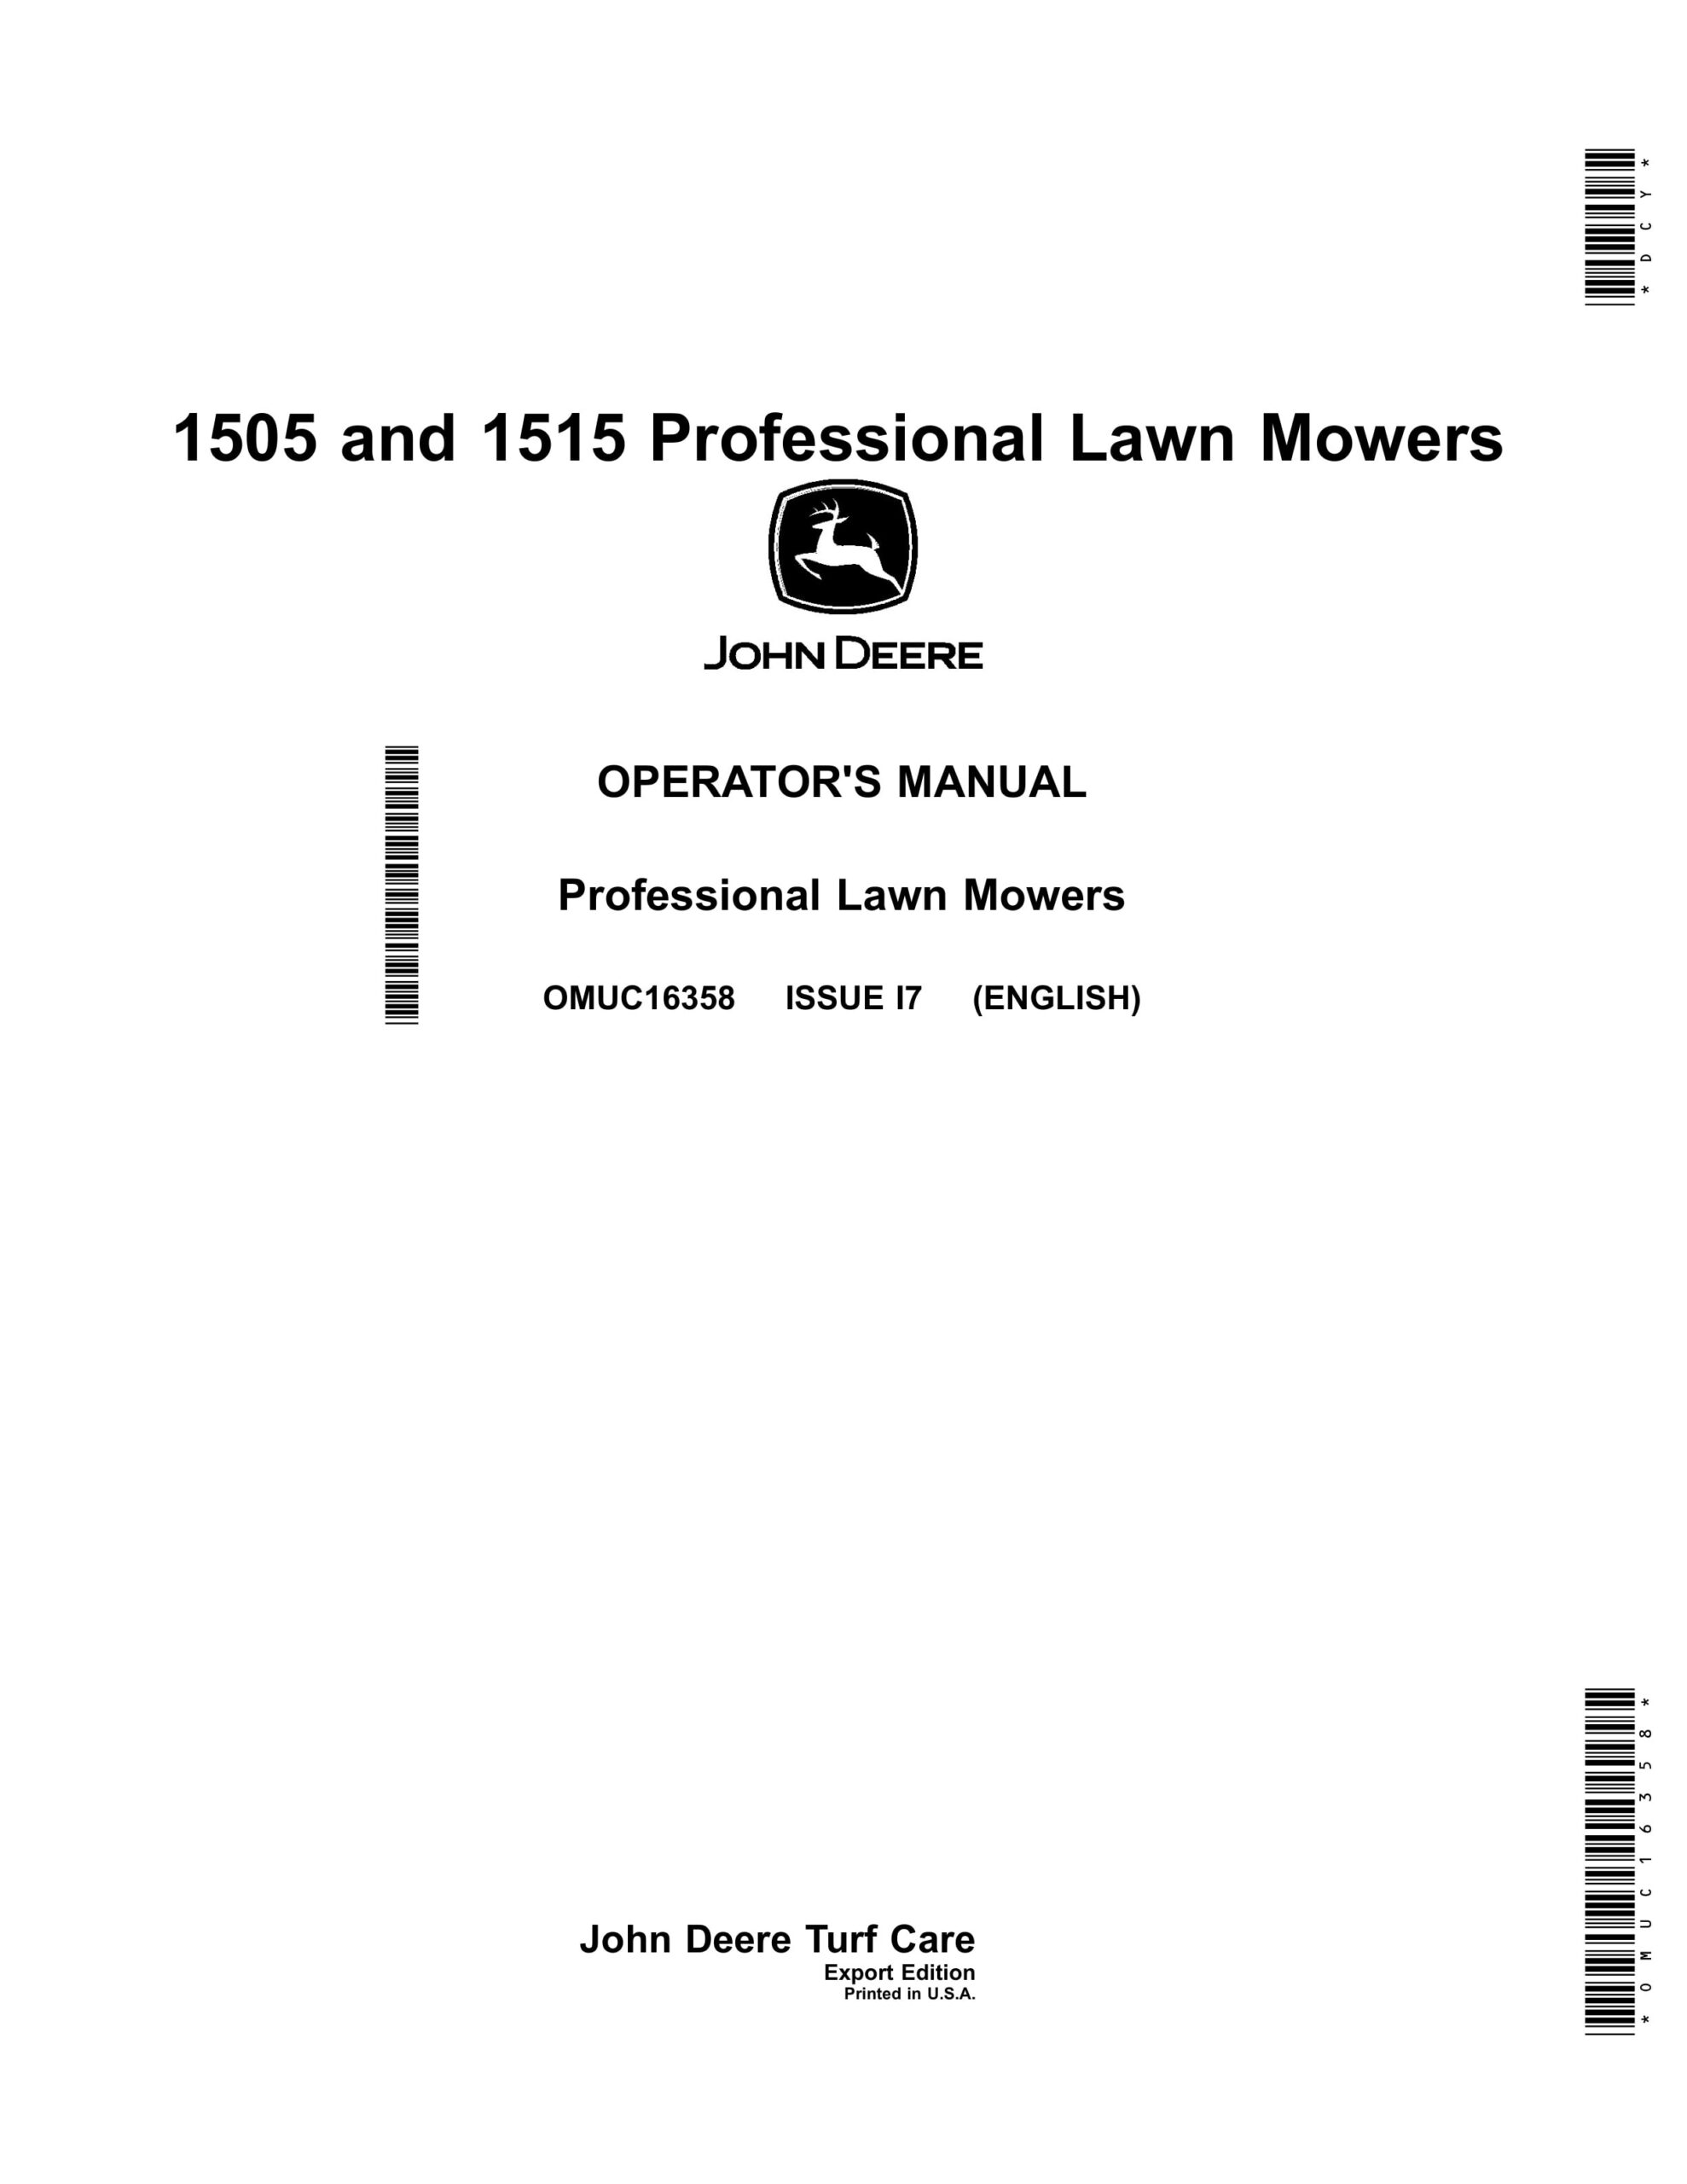 John Deere 1505 and 1515 Professional Lawn Mowers Operator Manual OMUC16358-1